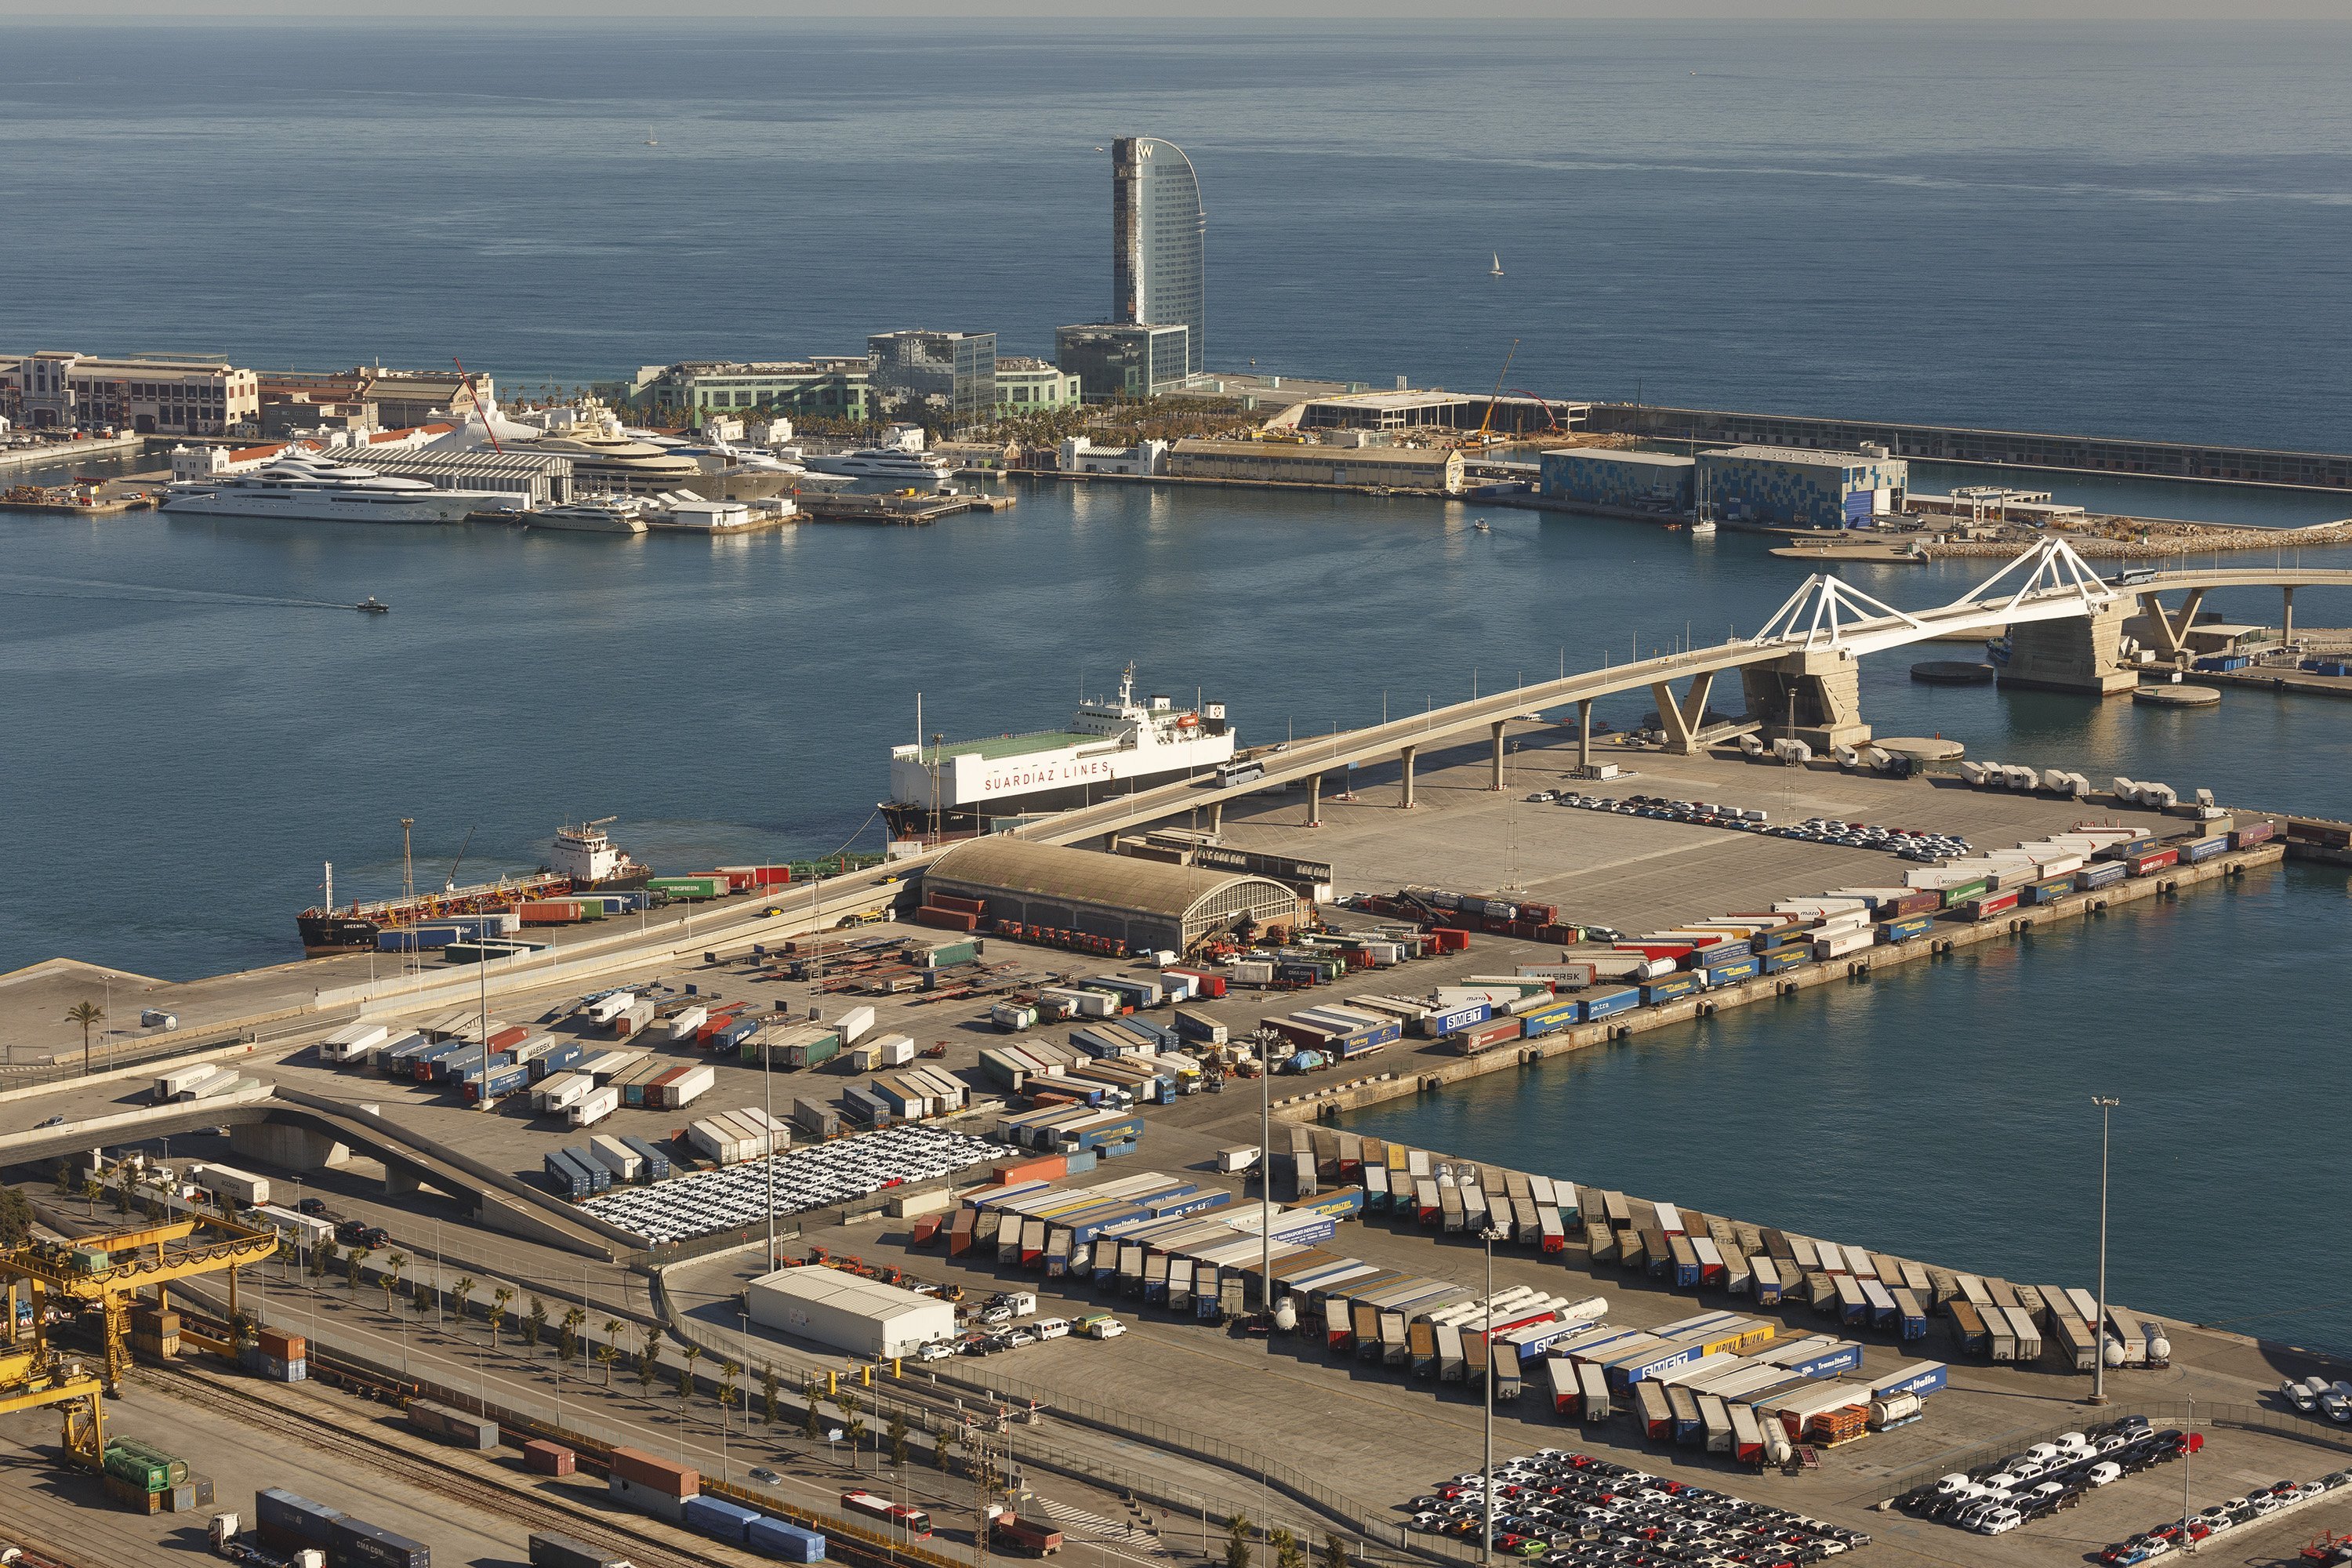 El Gobierno prohíbe al Puerto de Barcelona liderar misiones en el extranjero hasta después del 21-D